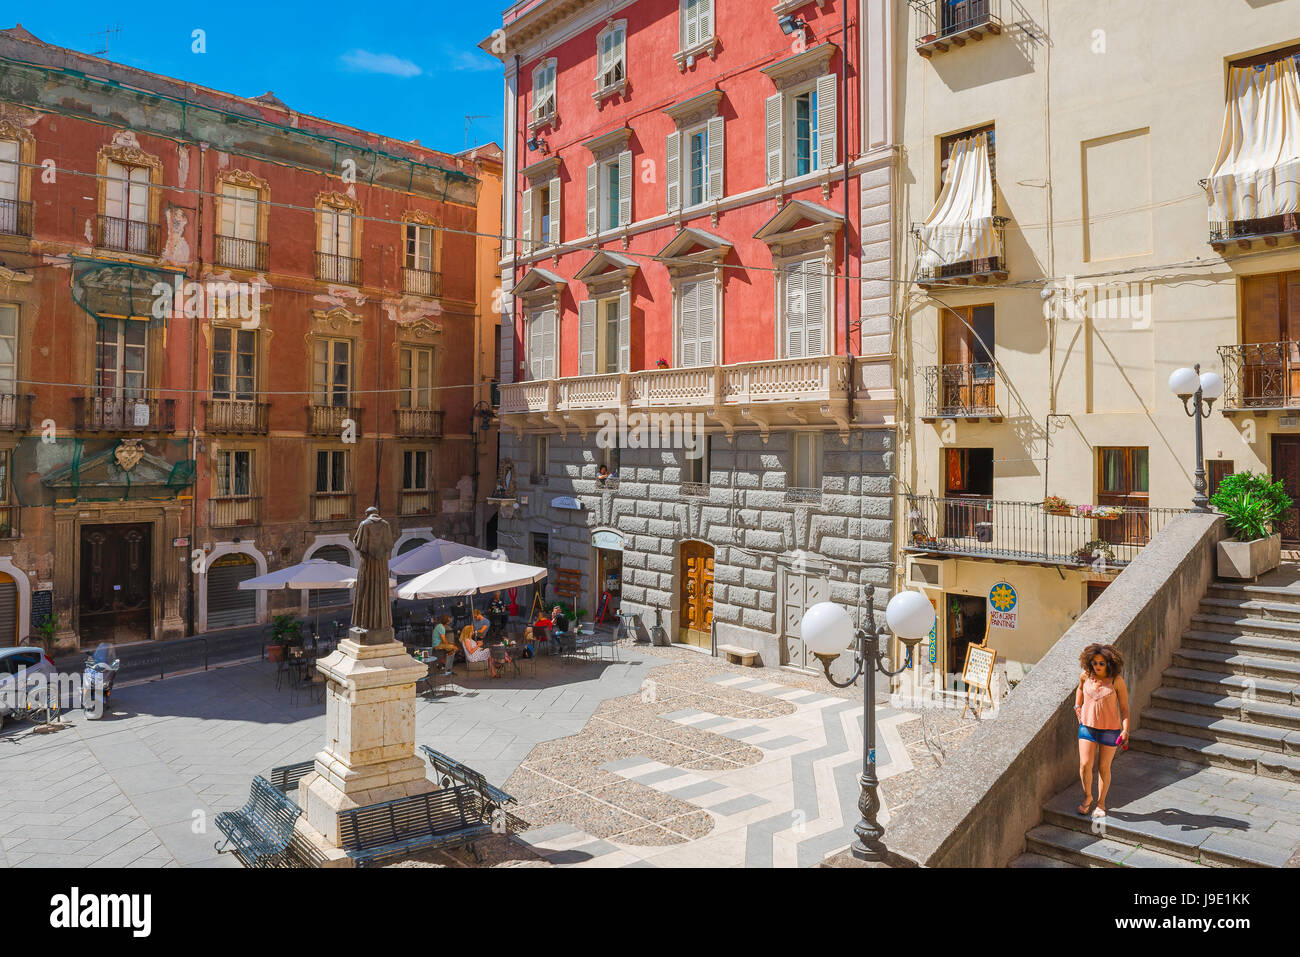 The Piazza Carlo Alberto in the Castello quarter of Cagliari, Sardinia. Stock Photo